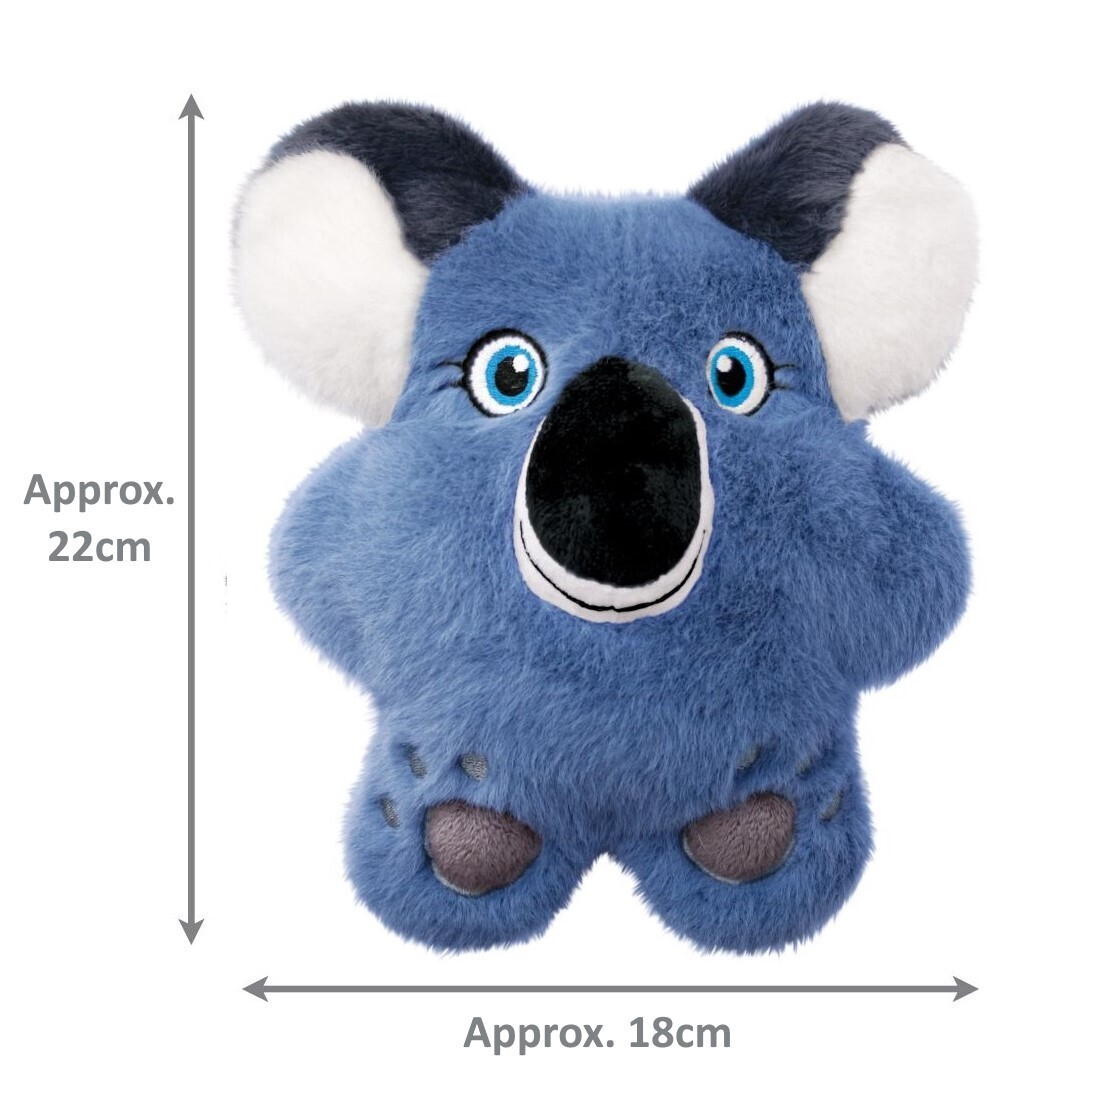 KONG Snuzzles Plush Squeaker Dog Toy - Koala  - Pack of 3 image 0